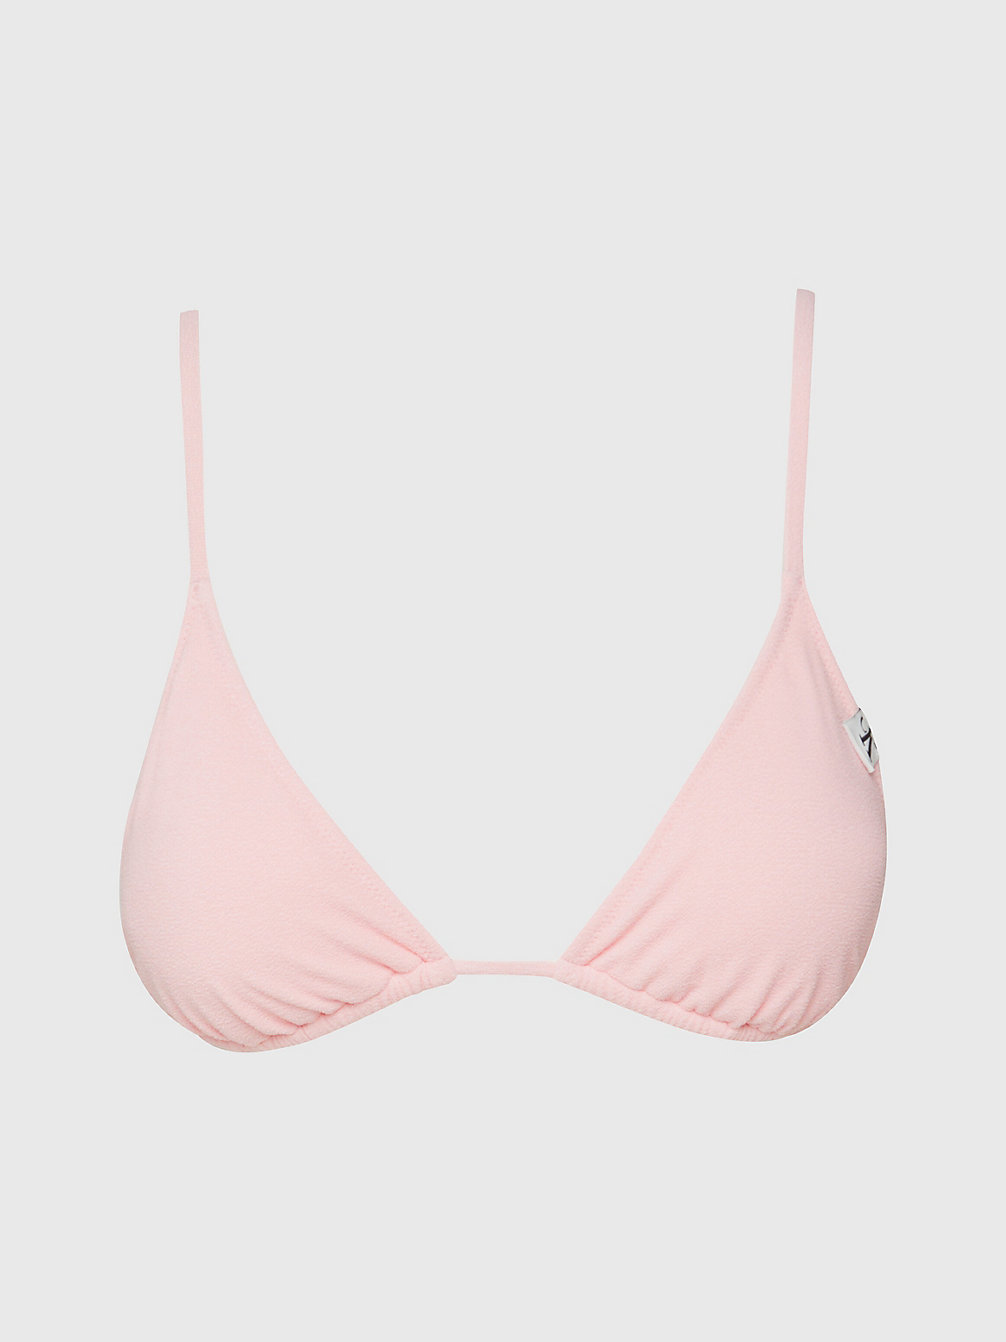 DREAMY PINK Triangel Bikini-Top – CK Texture undefined Damen Calvin Klein